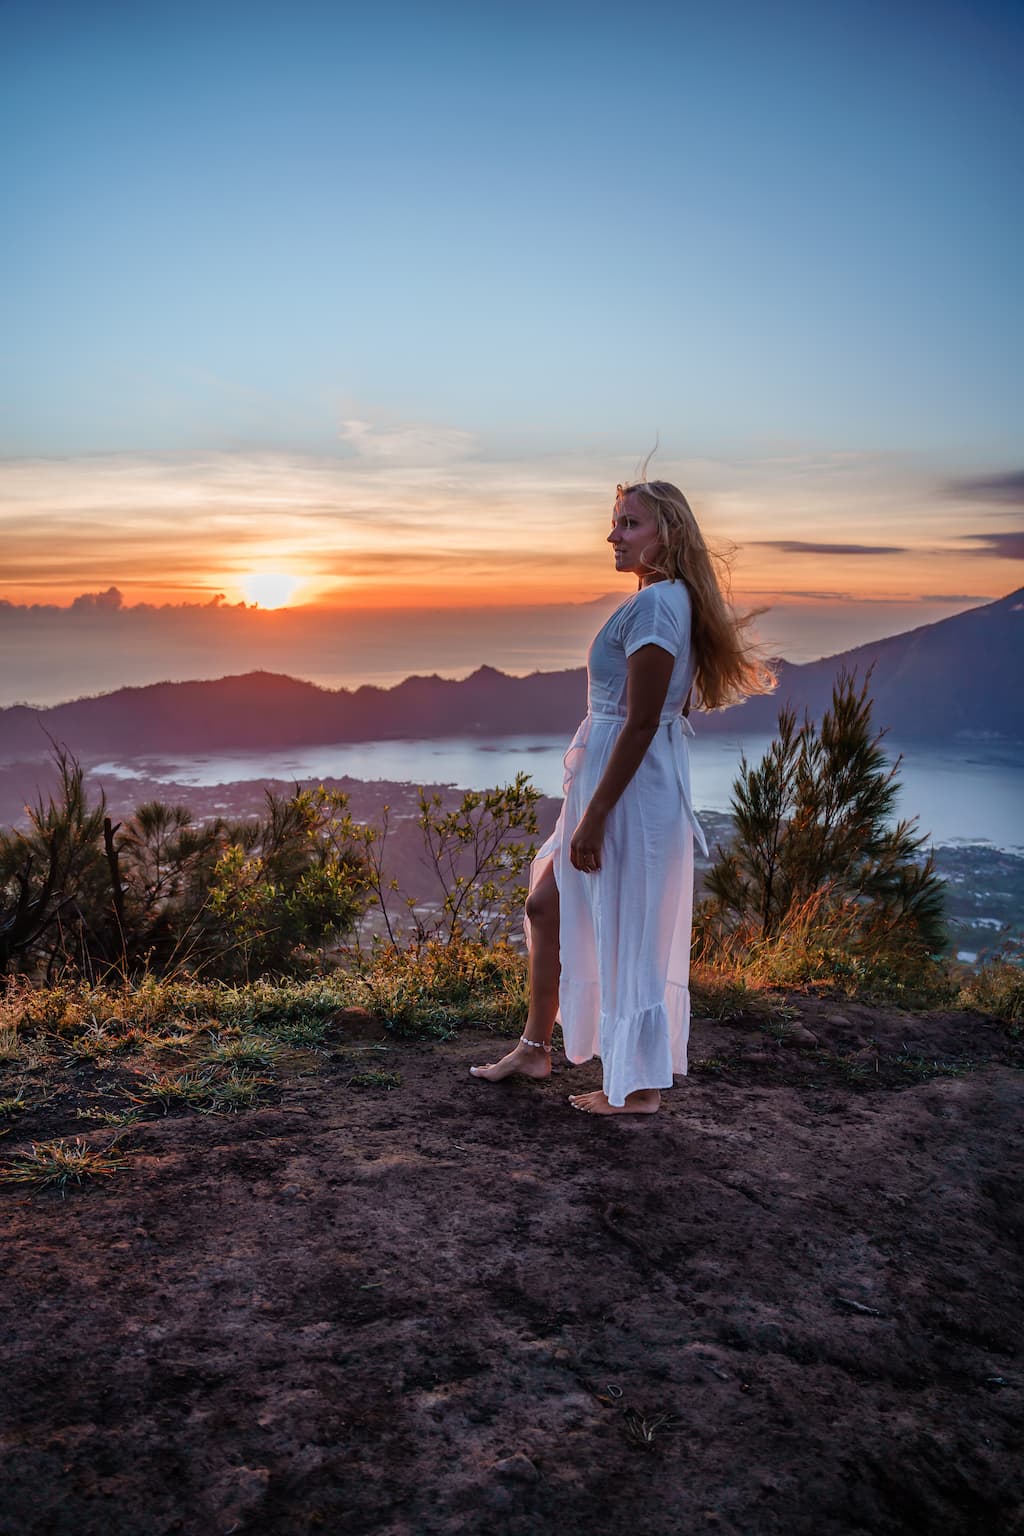 Mt Batur, Bali, sunset captions for instagram photos